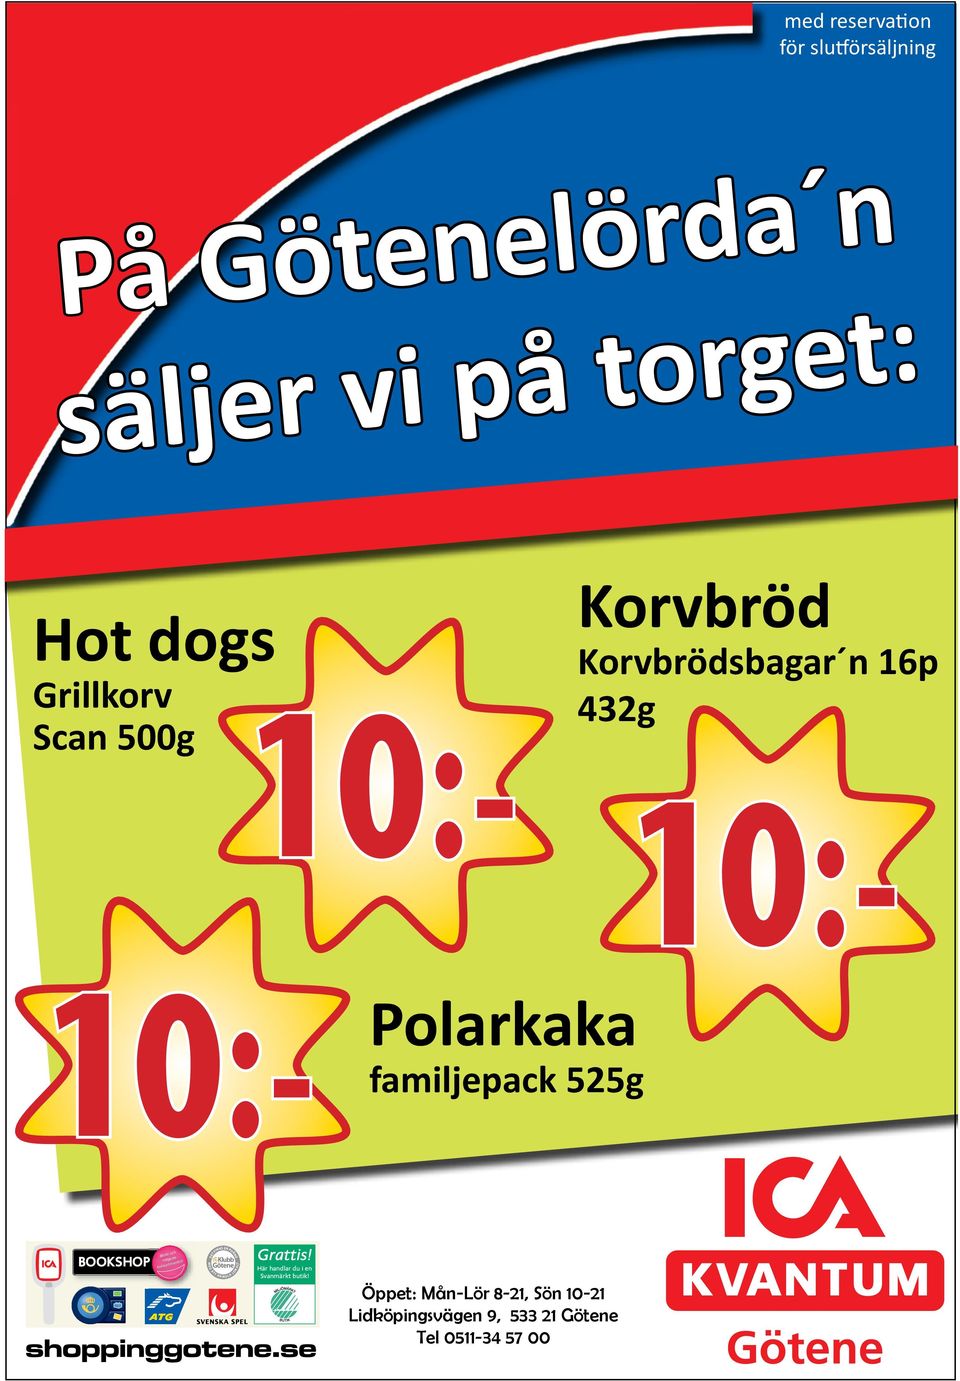 Petterssons chark Korvbröd Korvbrödsbagar n 16p 432g 10:- sylta, grisfötter 10:- Hörvikens 10:- fisk Kållandsö levererar rökt fisk och goda patéer.